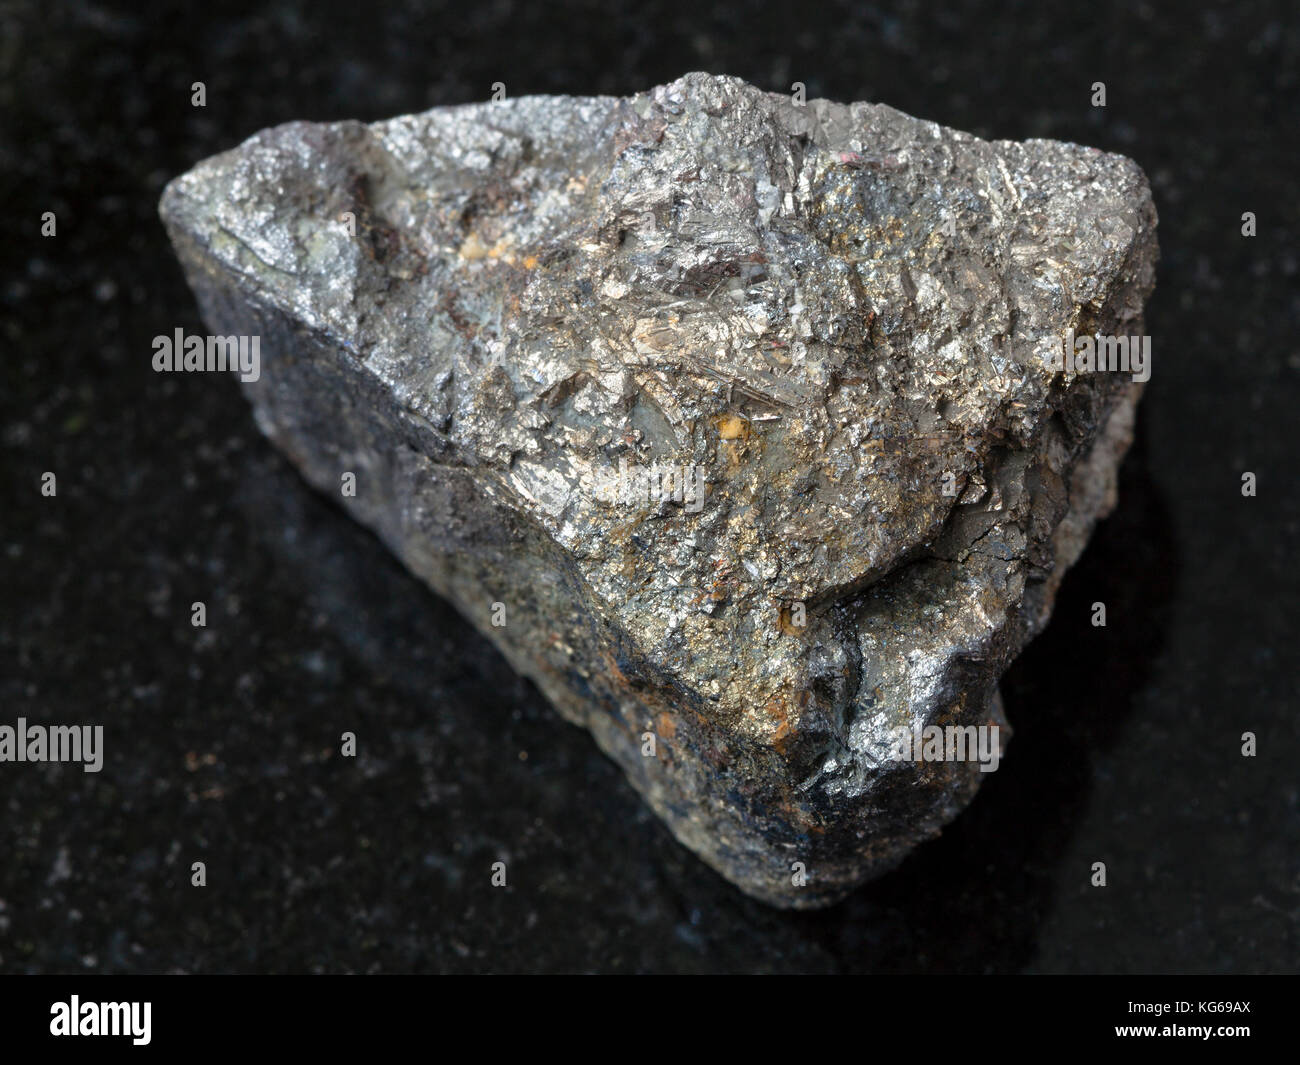 Makroaufnahmen von natürlichen Mineralgestein Muster - raw Arsenopyrit Stein auf dunklem Granit Hintergrund aus zabaykalsky Krasnodar, Russland Stockfoto